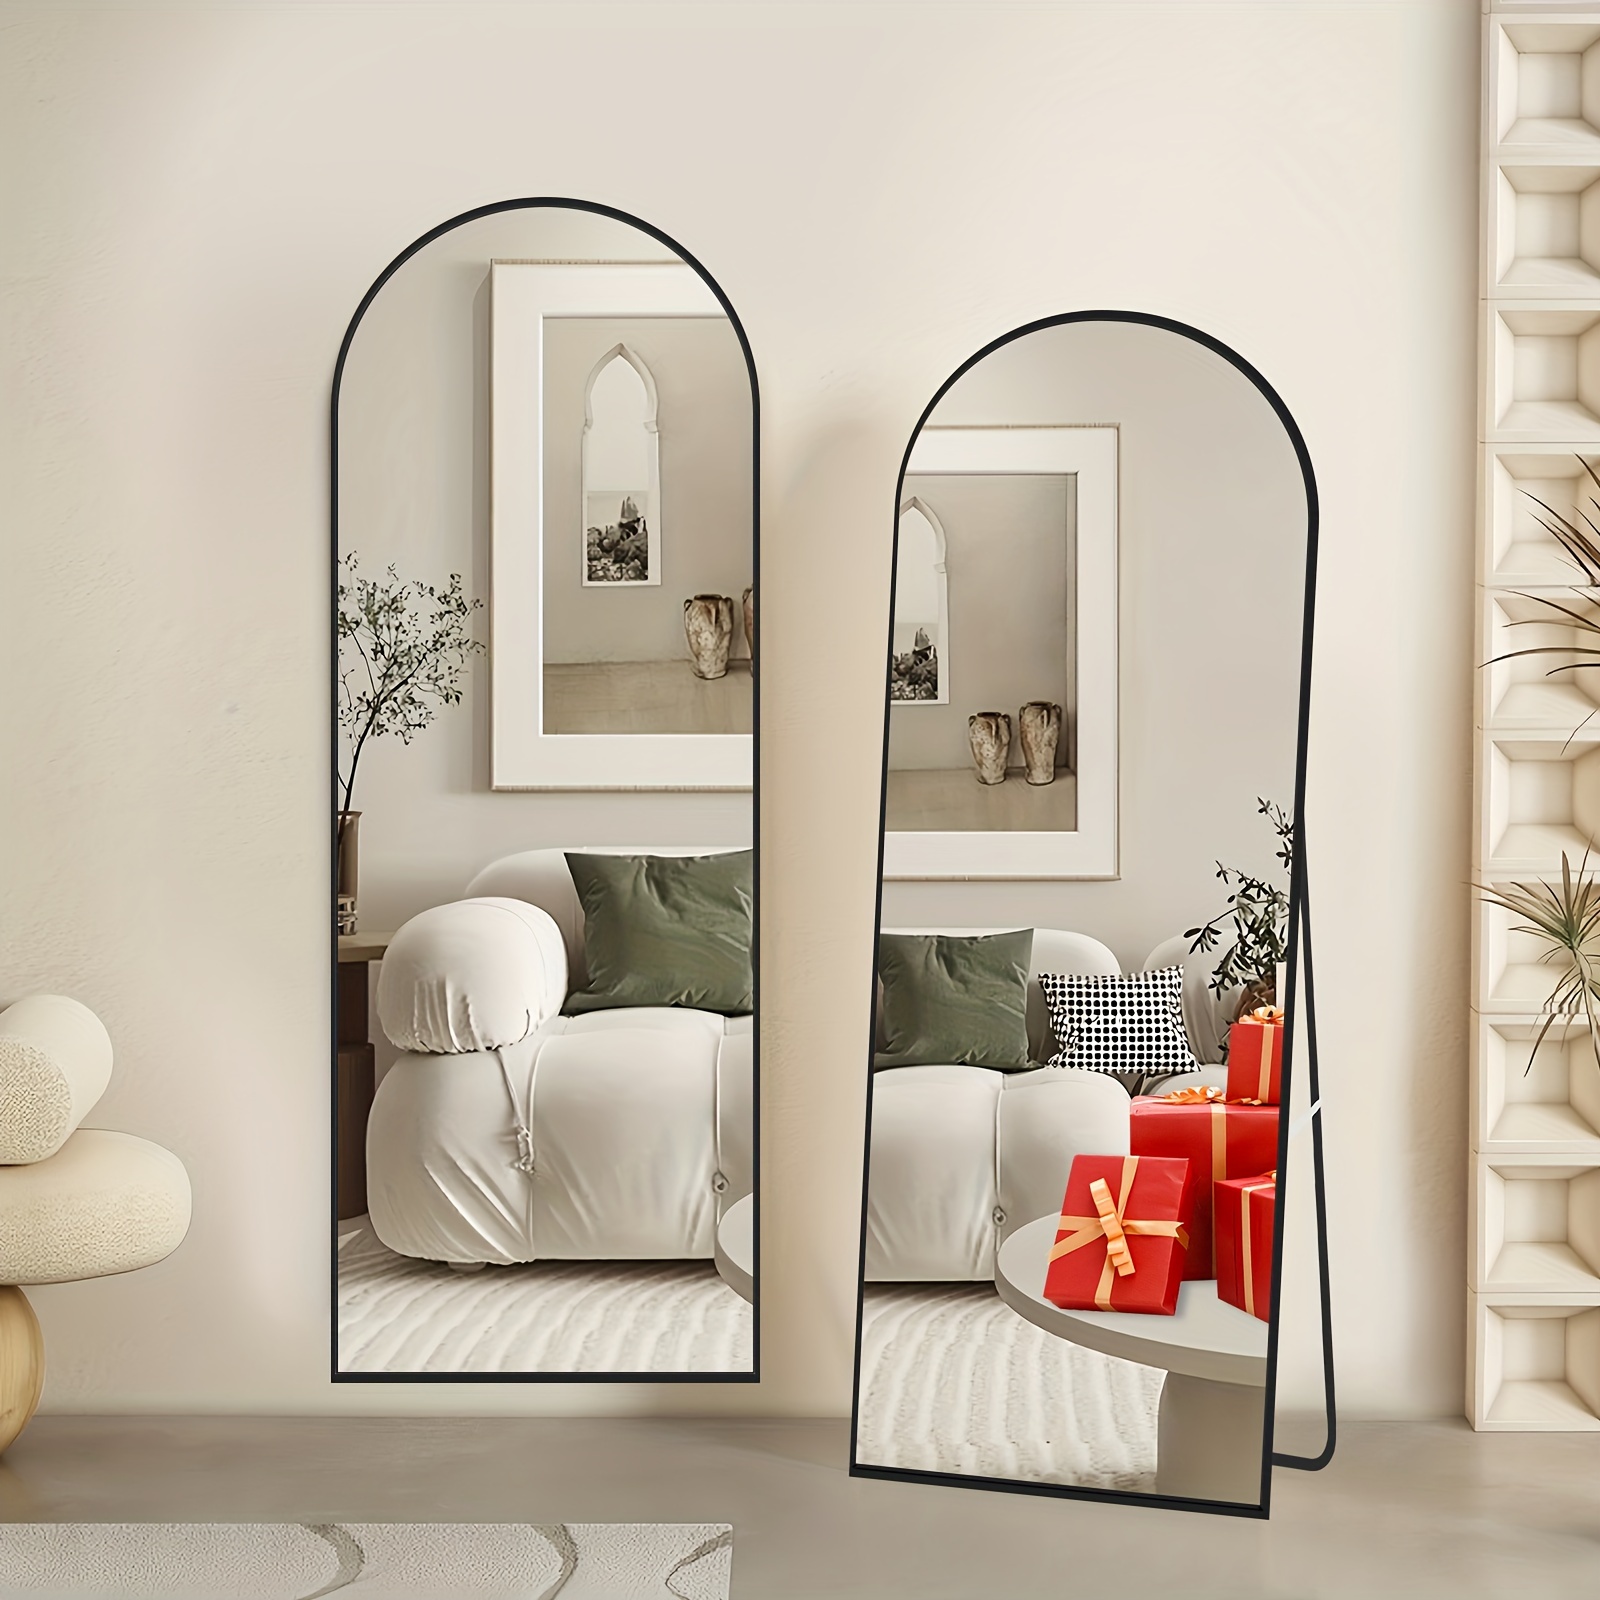 Wosthever Pluma 3D espejo pared pegatina decoración del hogar sala de estar  dormitorio arte hogar acrílico pegatina Mural pared espejo pegatina  Decoración del hogar 12# Wosthever HA002133-09